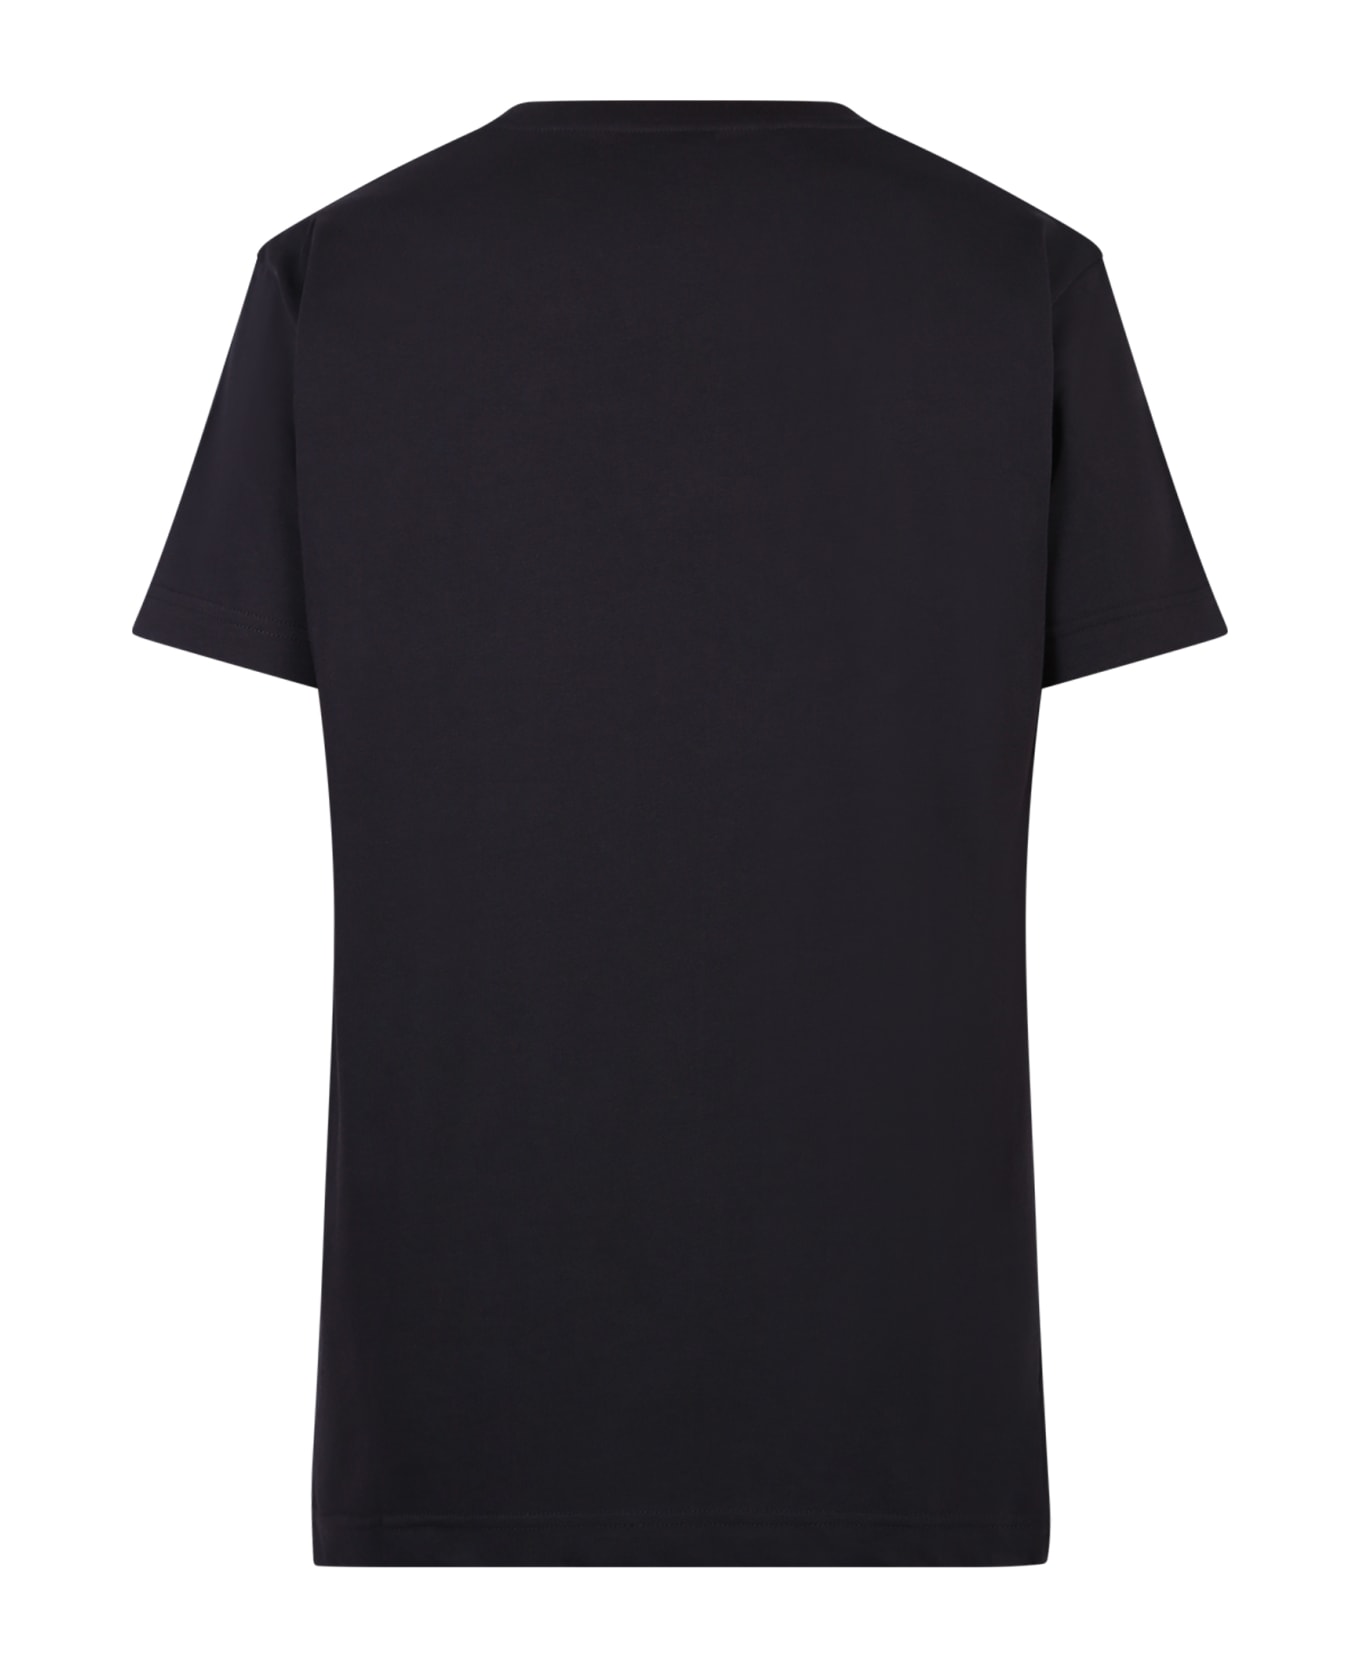 Giuseppe Zanotti Branded T-shirt - Black